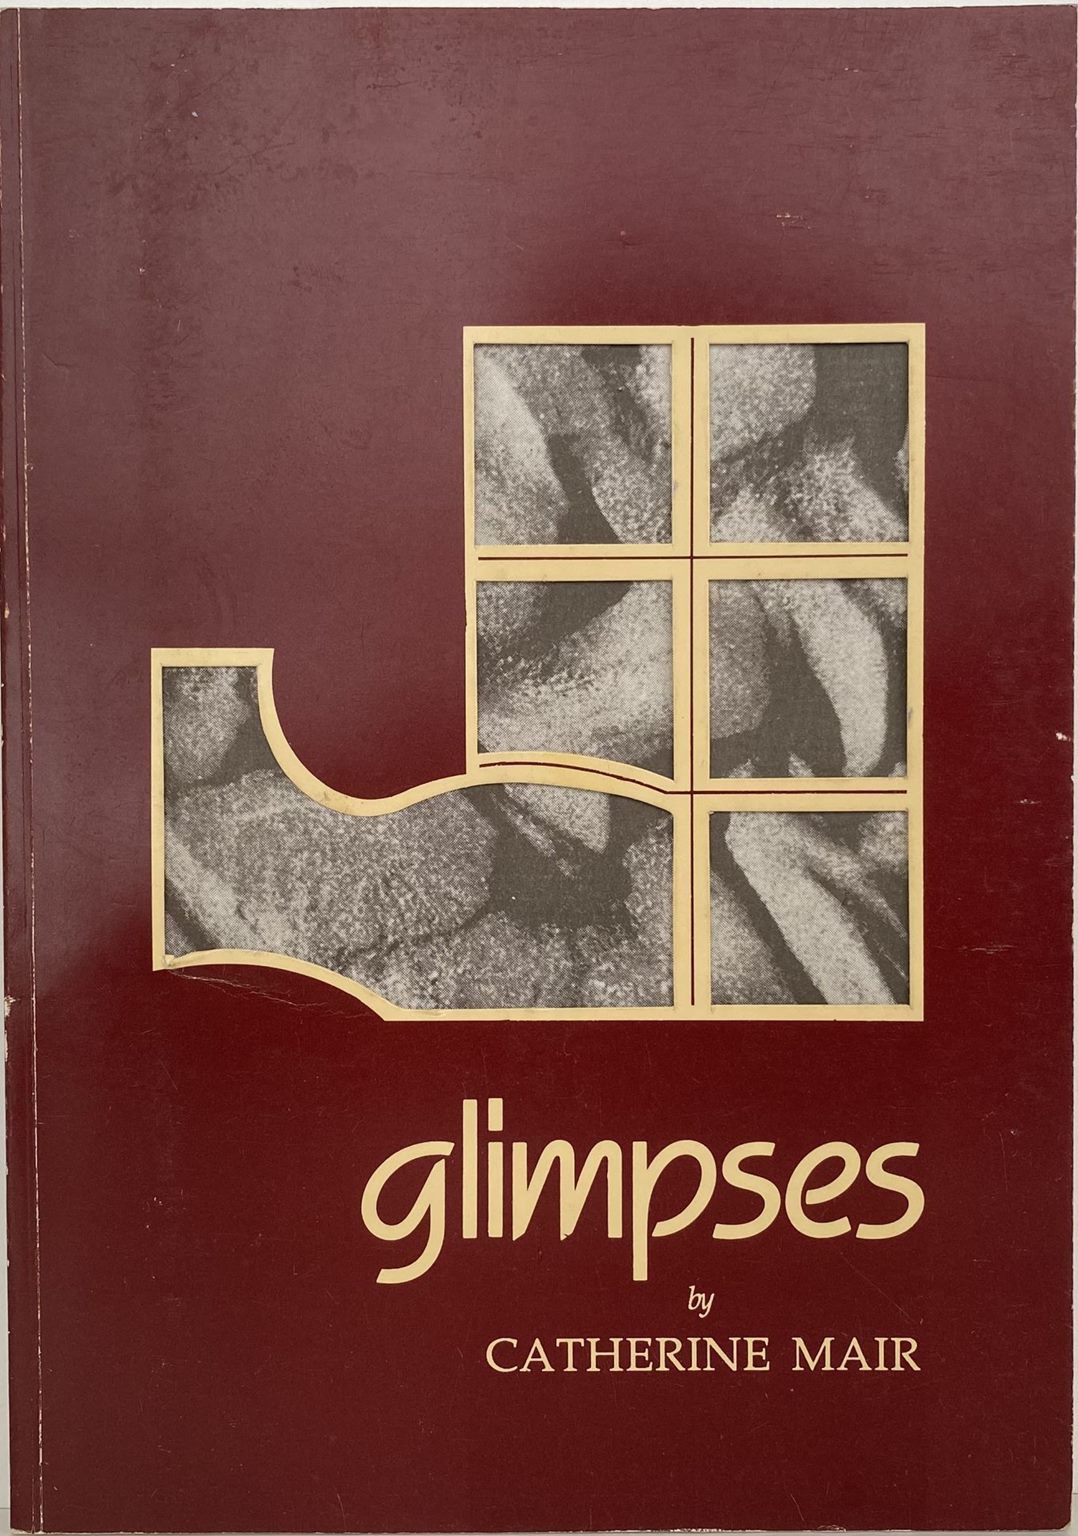 GLIMPSES